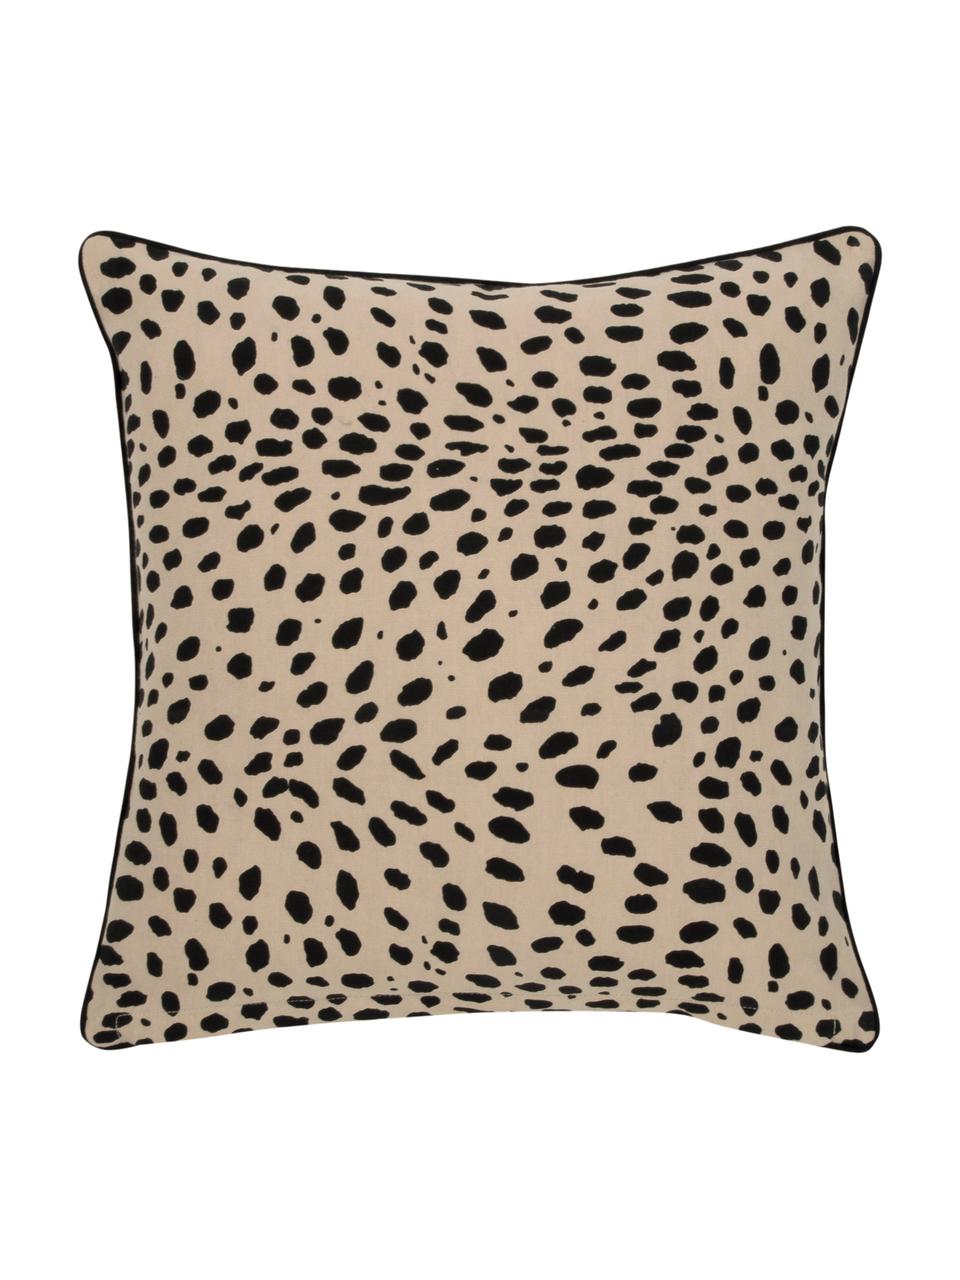 Federa arredo con motivo leopardato Leopard, 100% cotone, Beige, nero, Larg. 45 x Lung. 45 cm